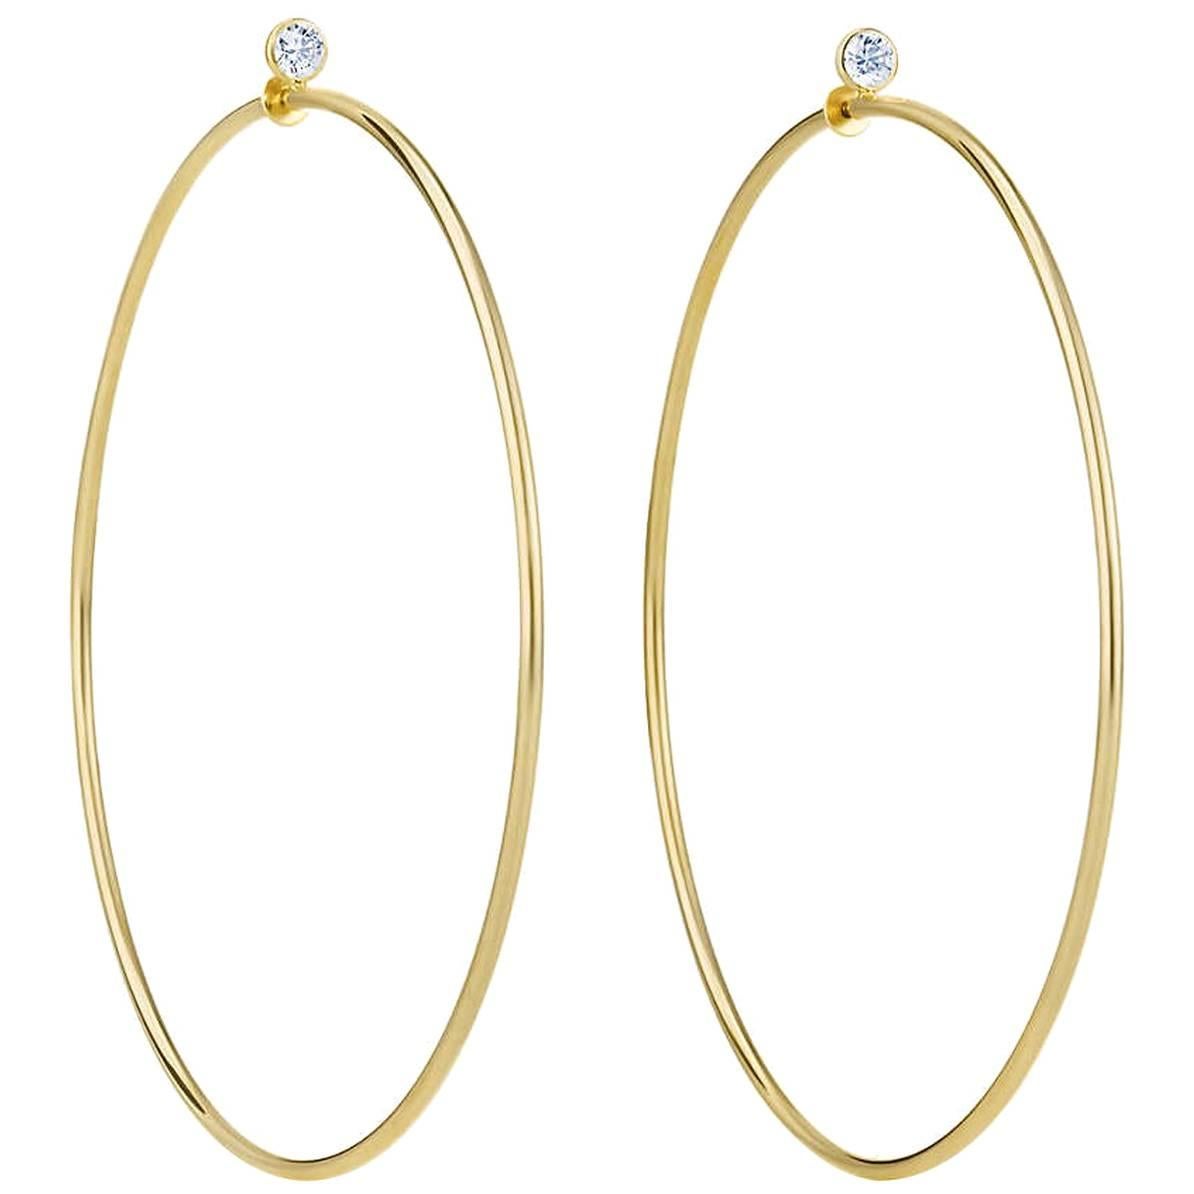 Tiffany & Co. Elsa Peretti 18k Yellow Gold & Diamond Medium Hoop Earrings